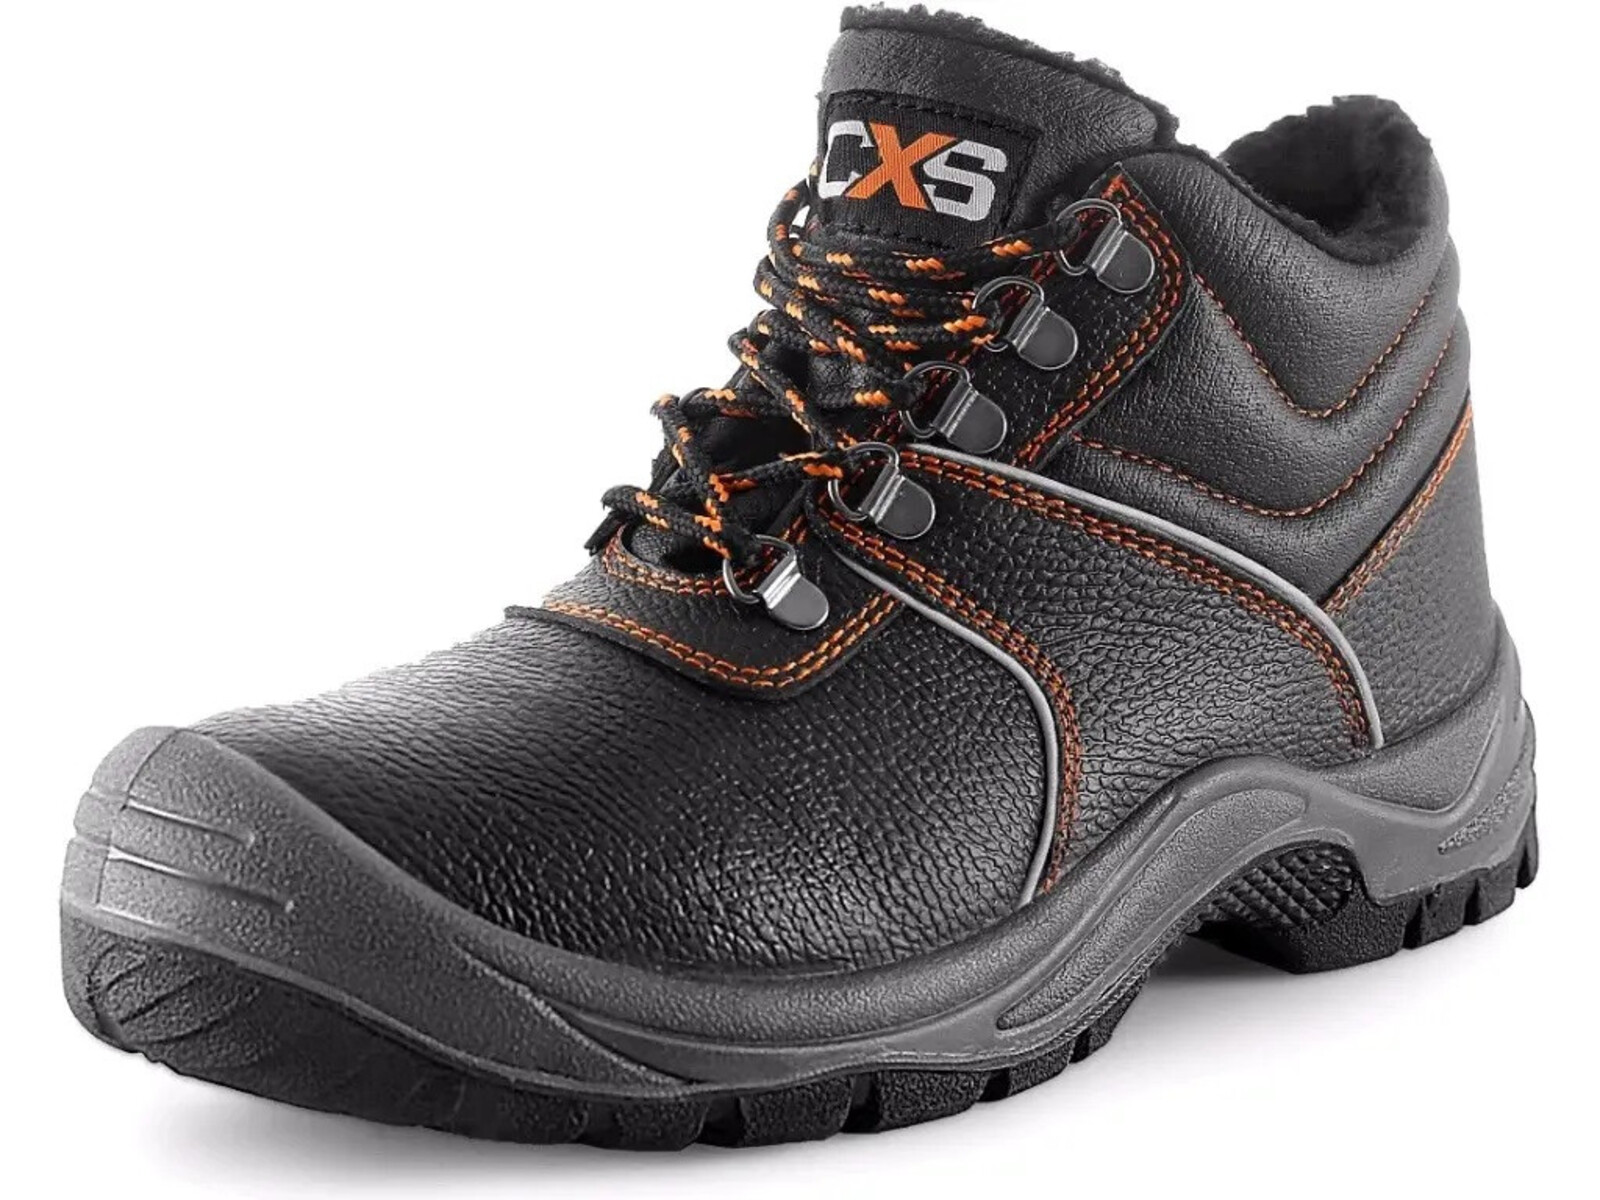 Zimná pracovná členková obuv CXS Stone Apatit Winter O2 FO SRC - veľkosť: 48, farba: čierna/oranžová